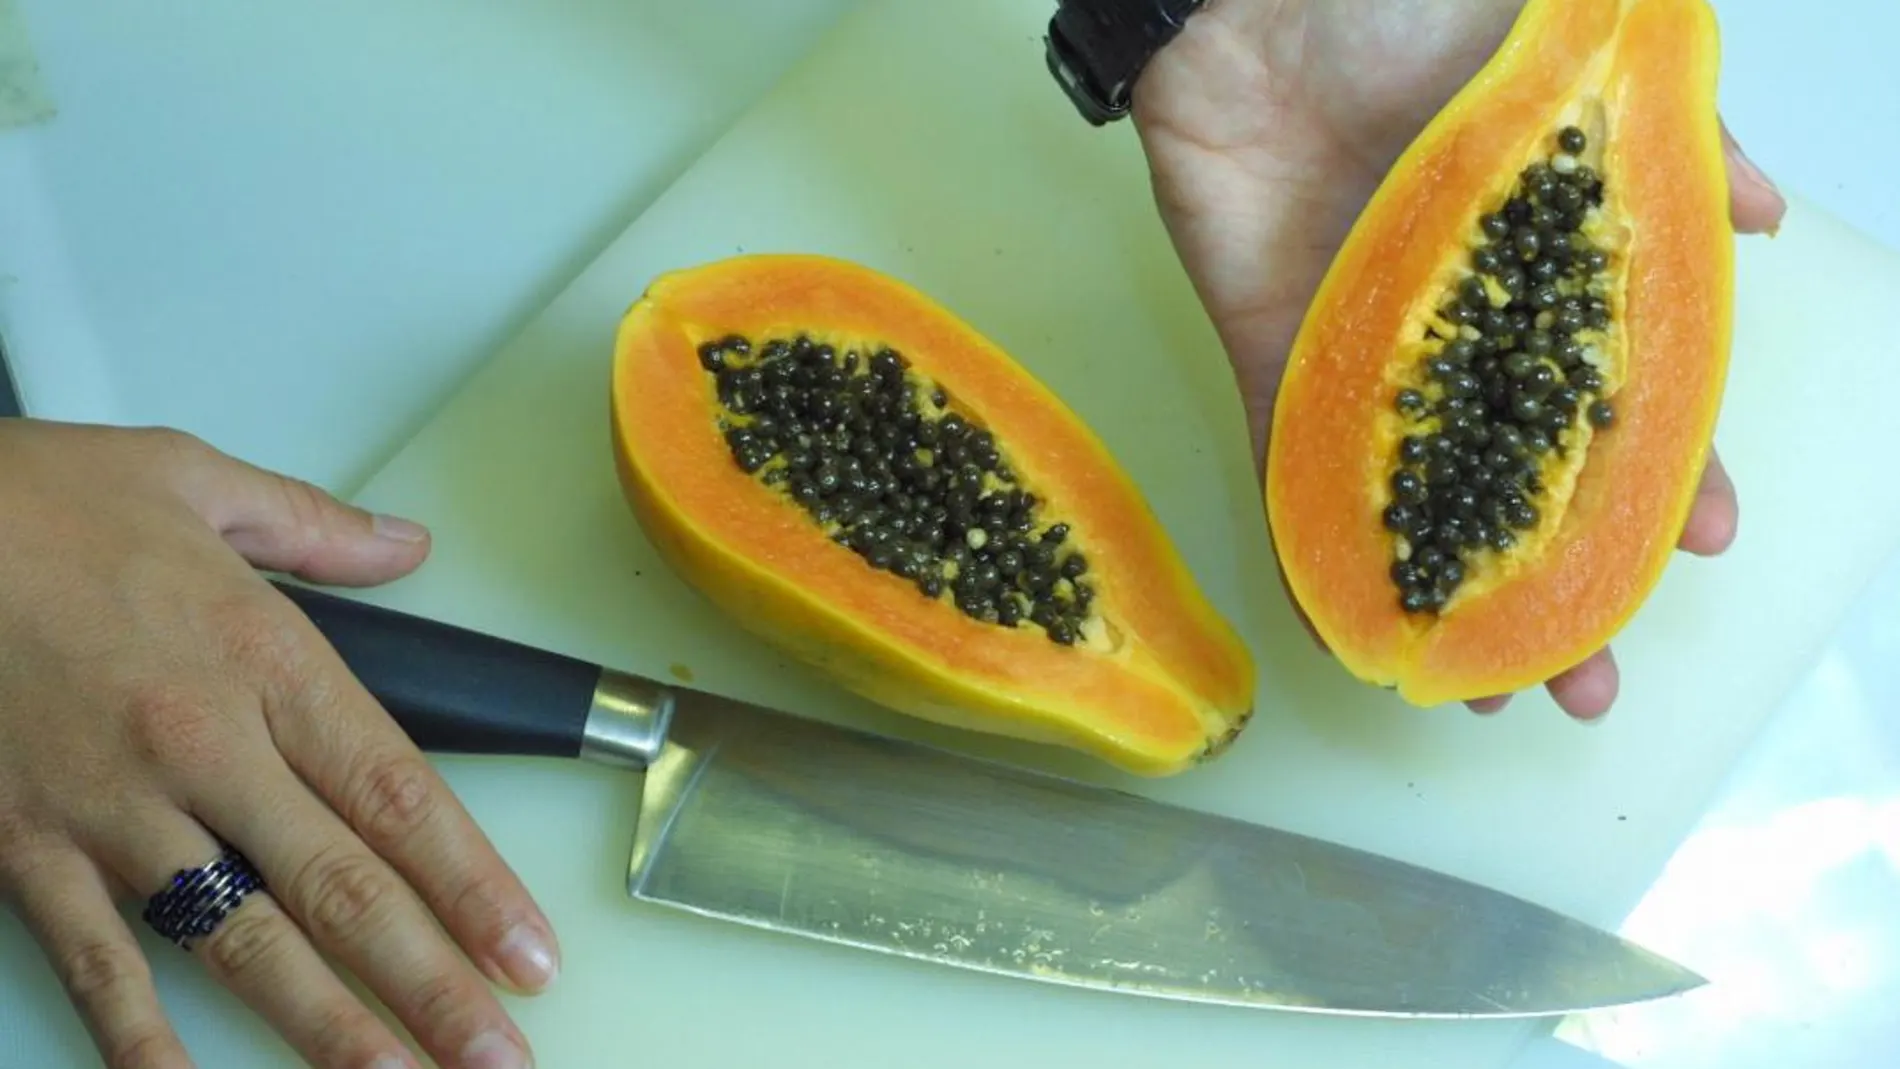 La papaya es un alimento muy sano, pero no previene el cáncer / C. Pastrano